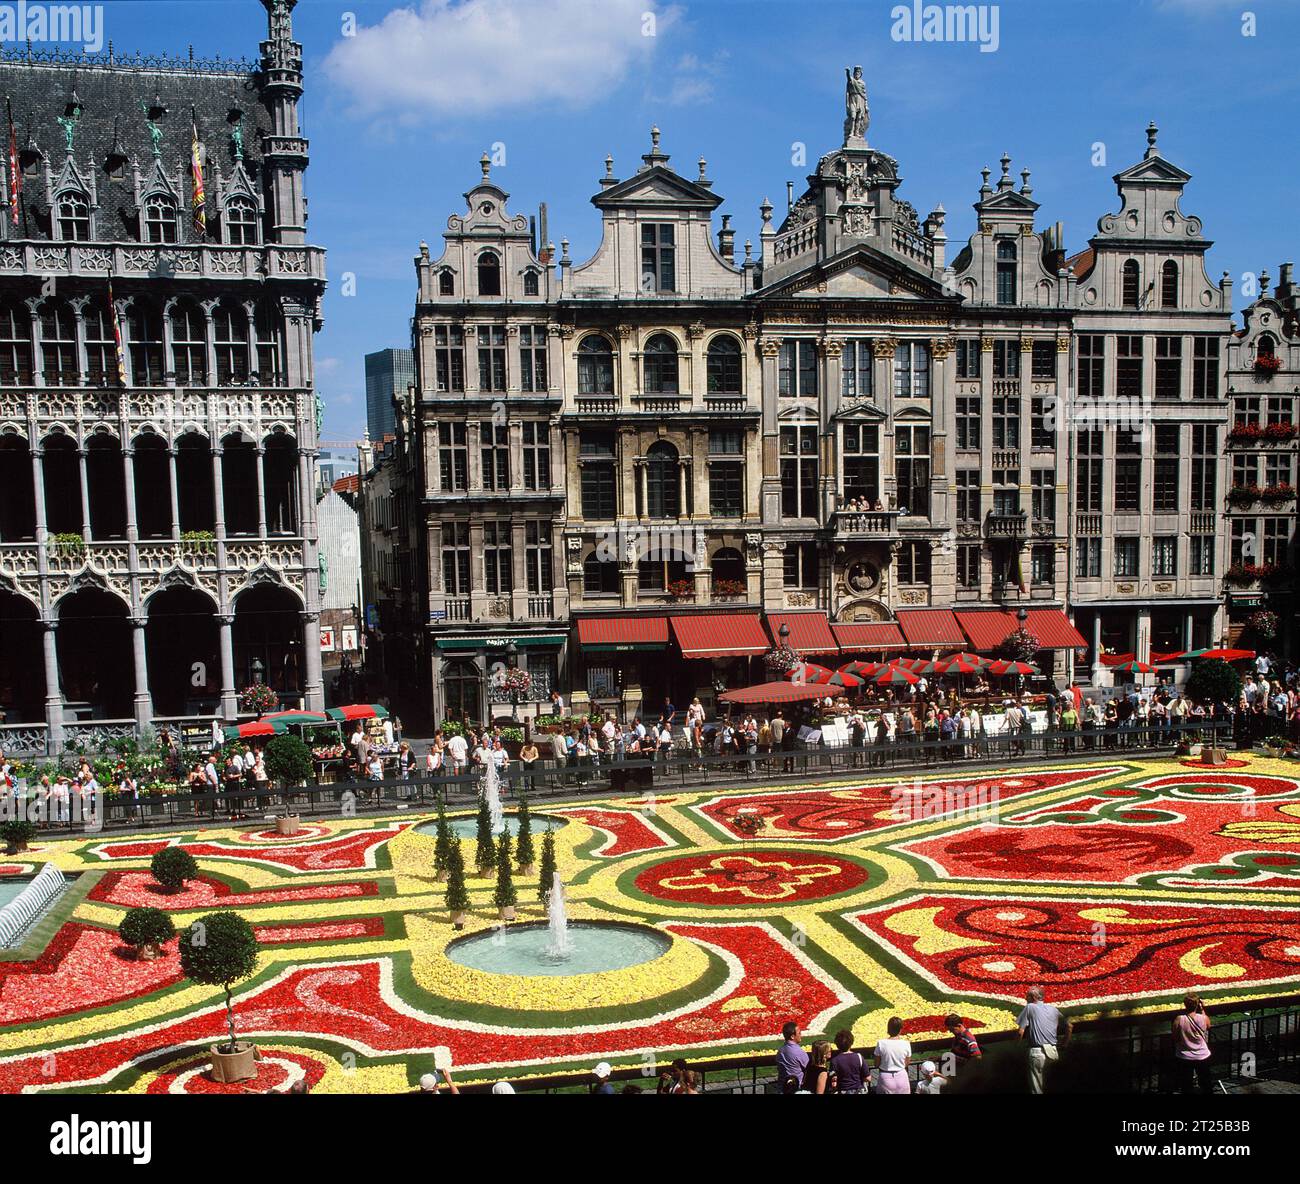 Belgique. Bruxelles. Le tapis de fleurs de la Grand place. Banque D'Images